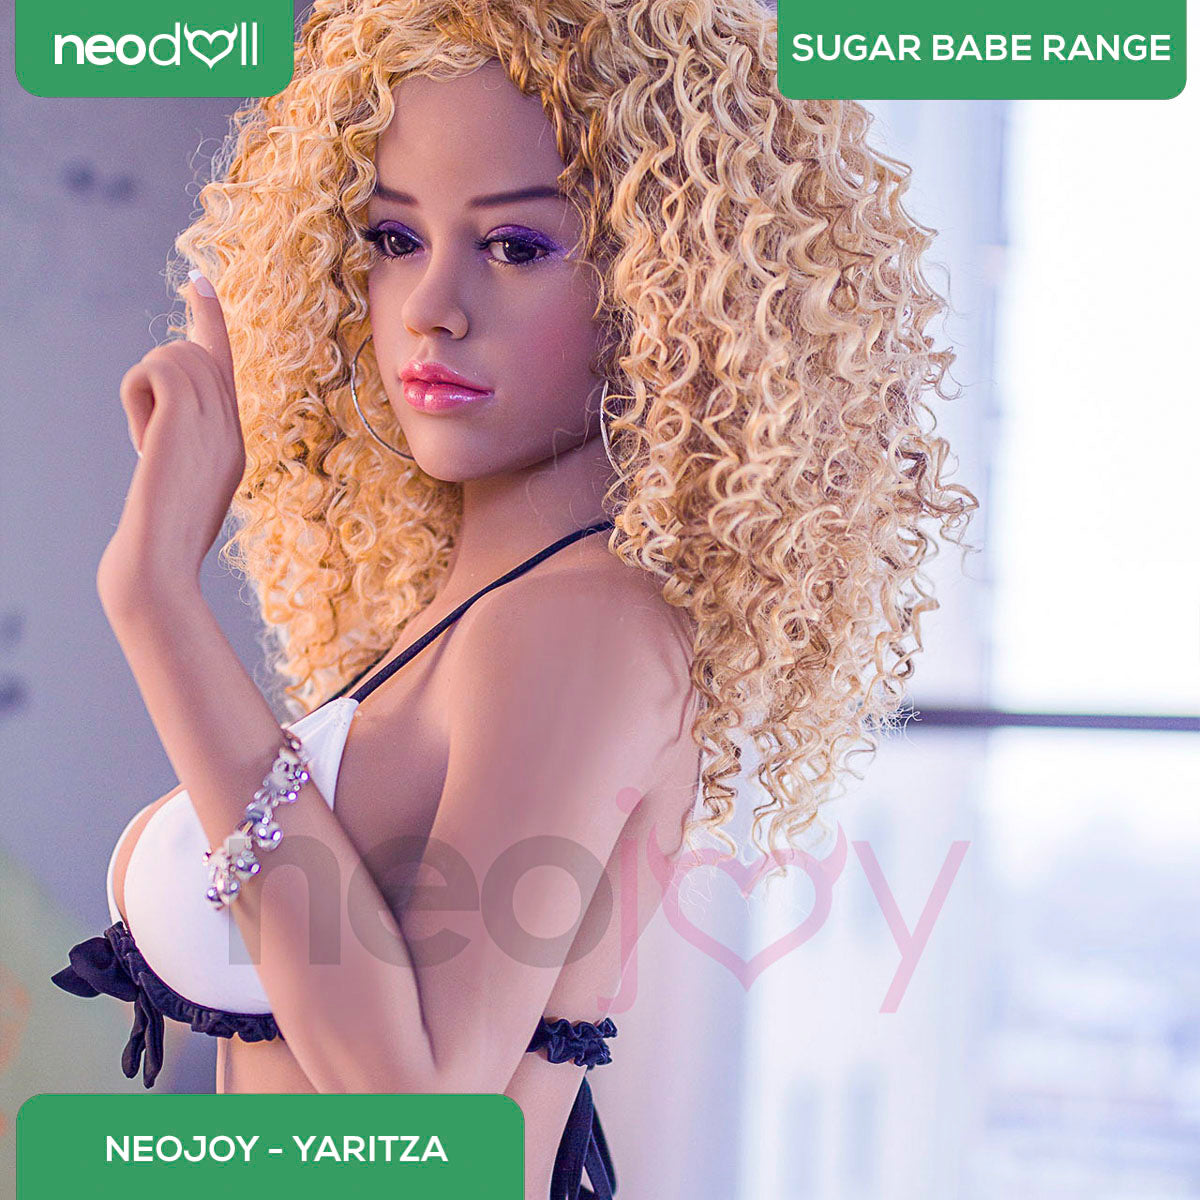 Neodoll Sugar Babe - Yaritza - Realistic Sex Doll - 148cm - Tan